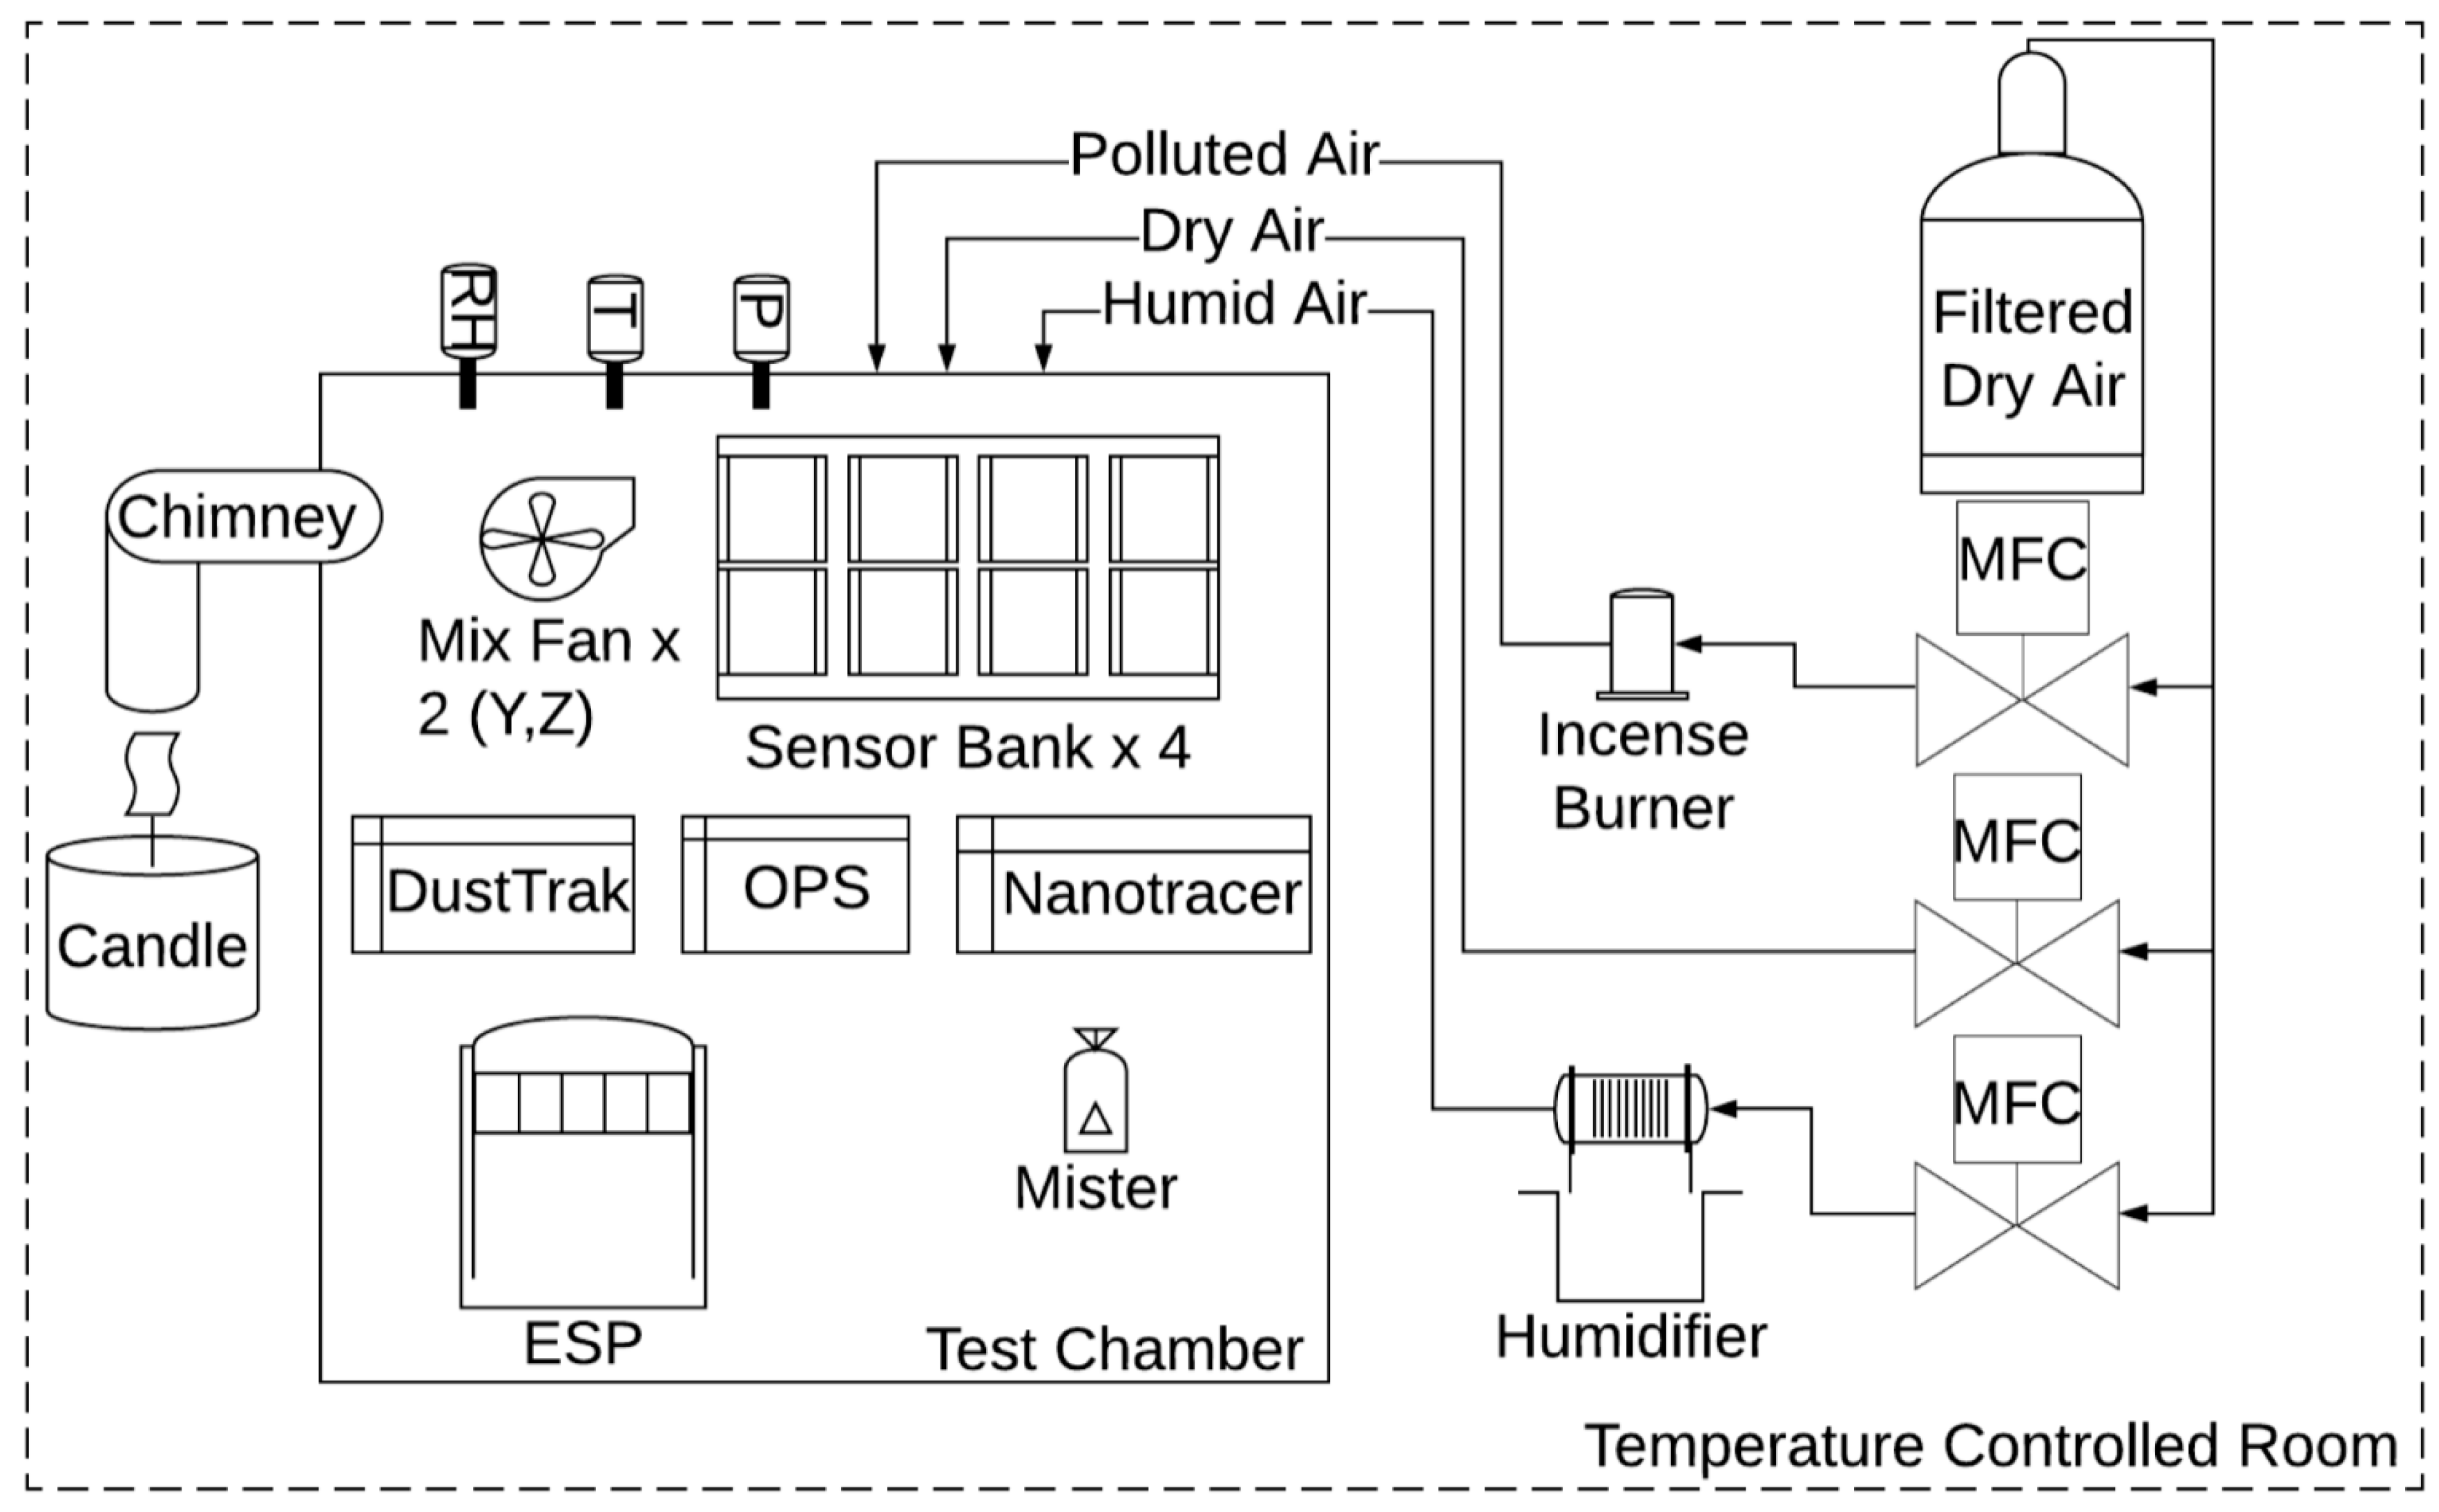 AirAssure Appareil de Mesure de la Qualité de l'air intérieur - Spec Sheet  - TSI - Catalogue PDF, Documentation technique